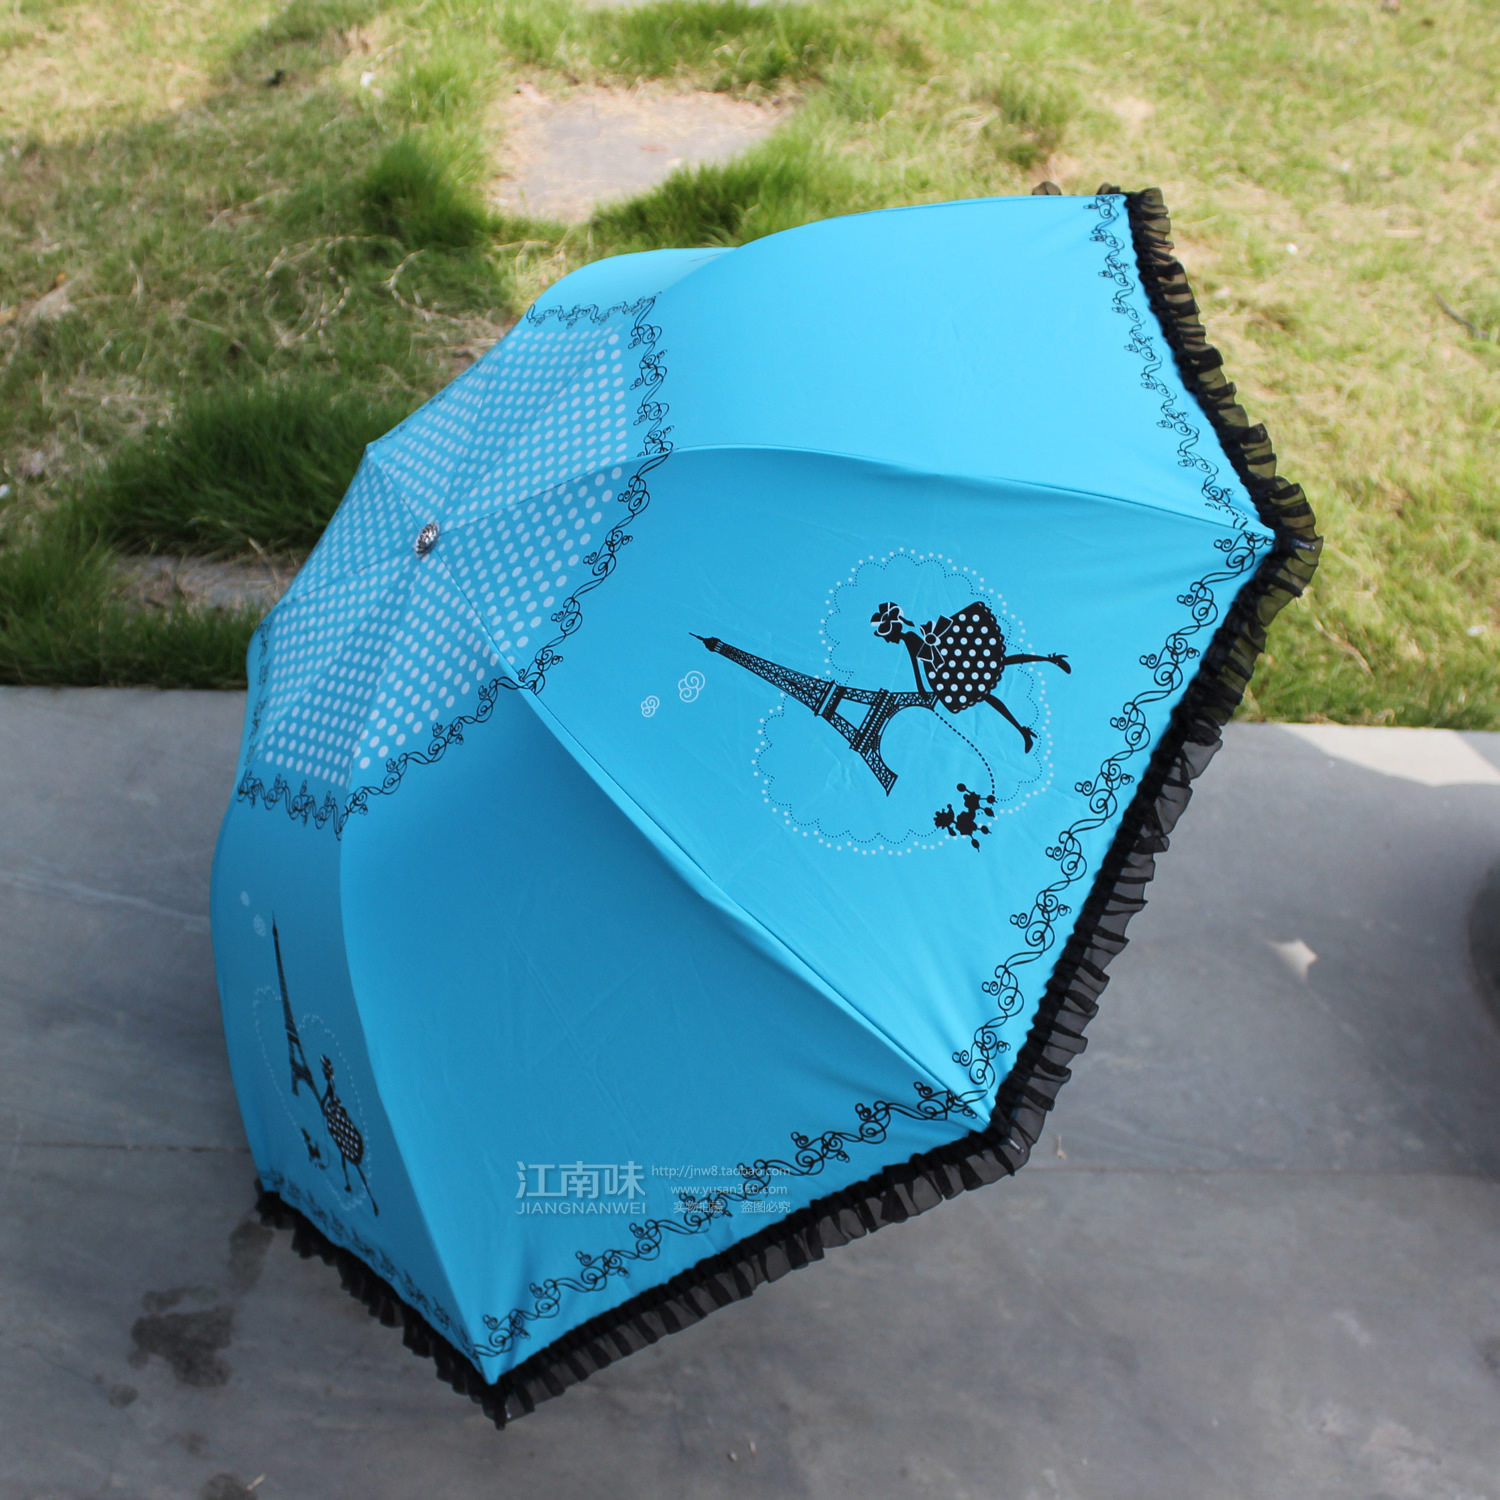 新款黑胶太阳伞 巴黎美女铁塔伞  防嗮伞 折叠三折创意礼品伞折扣优惠信息